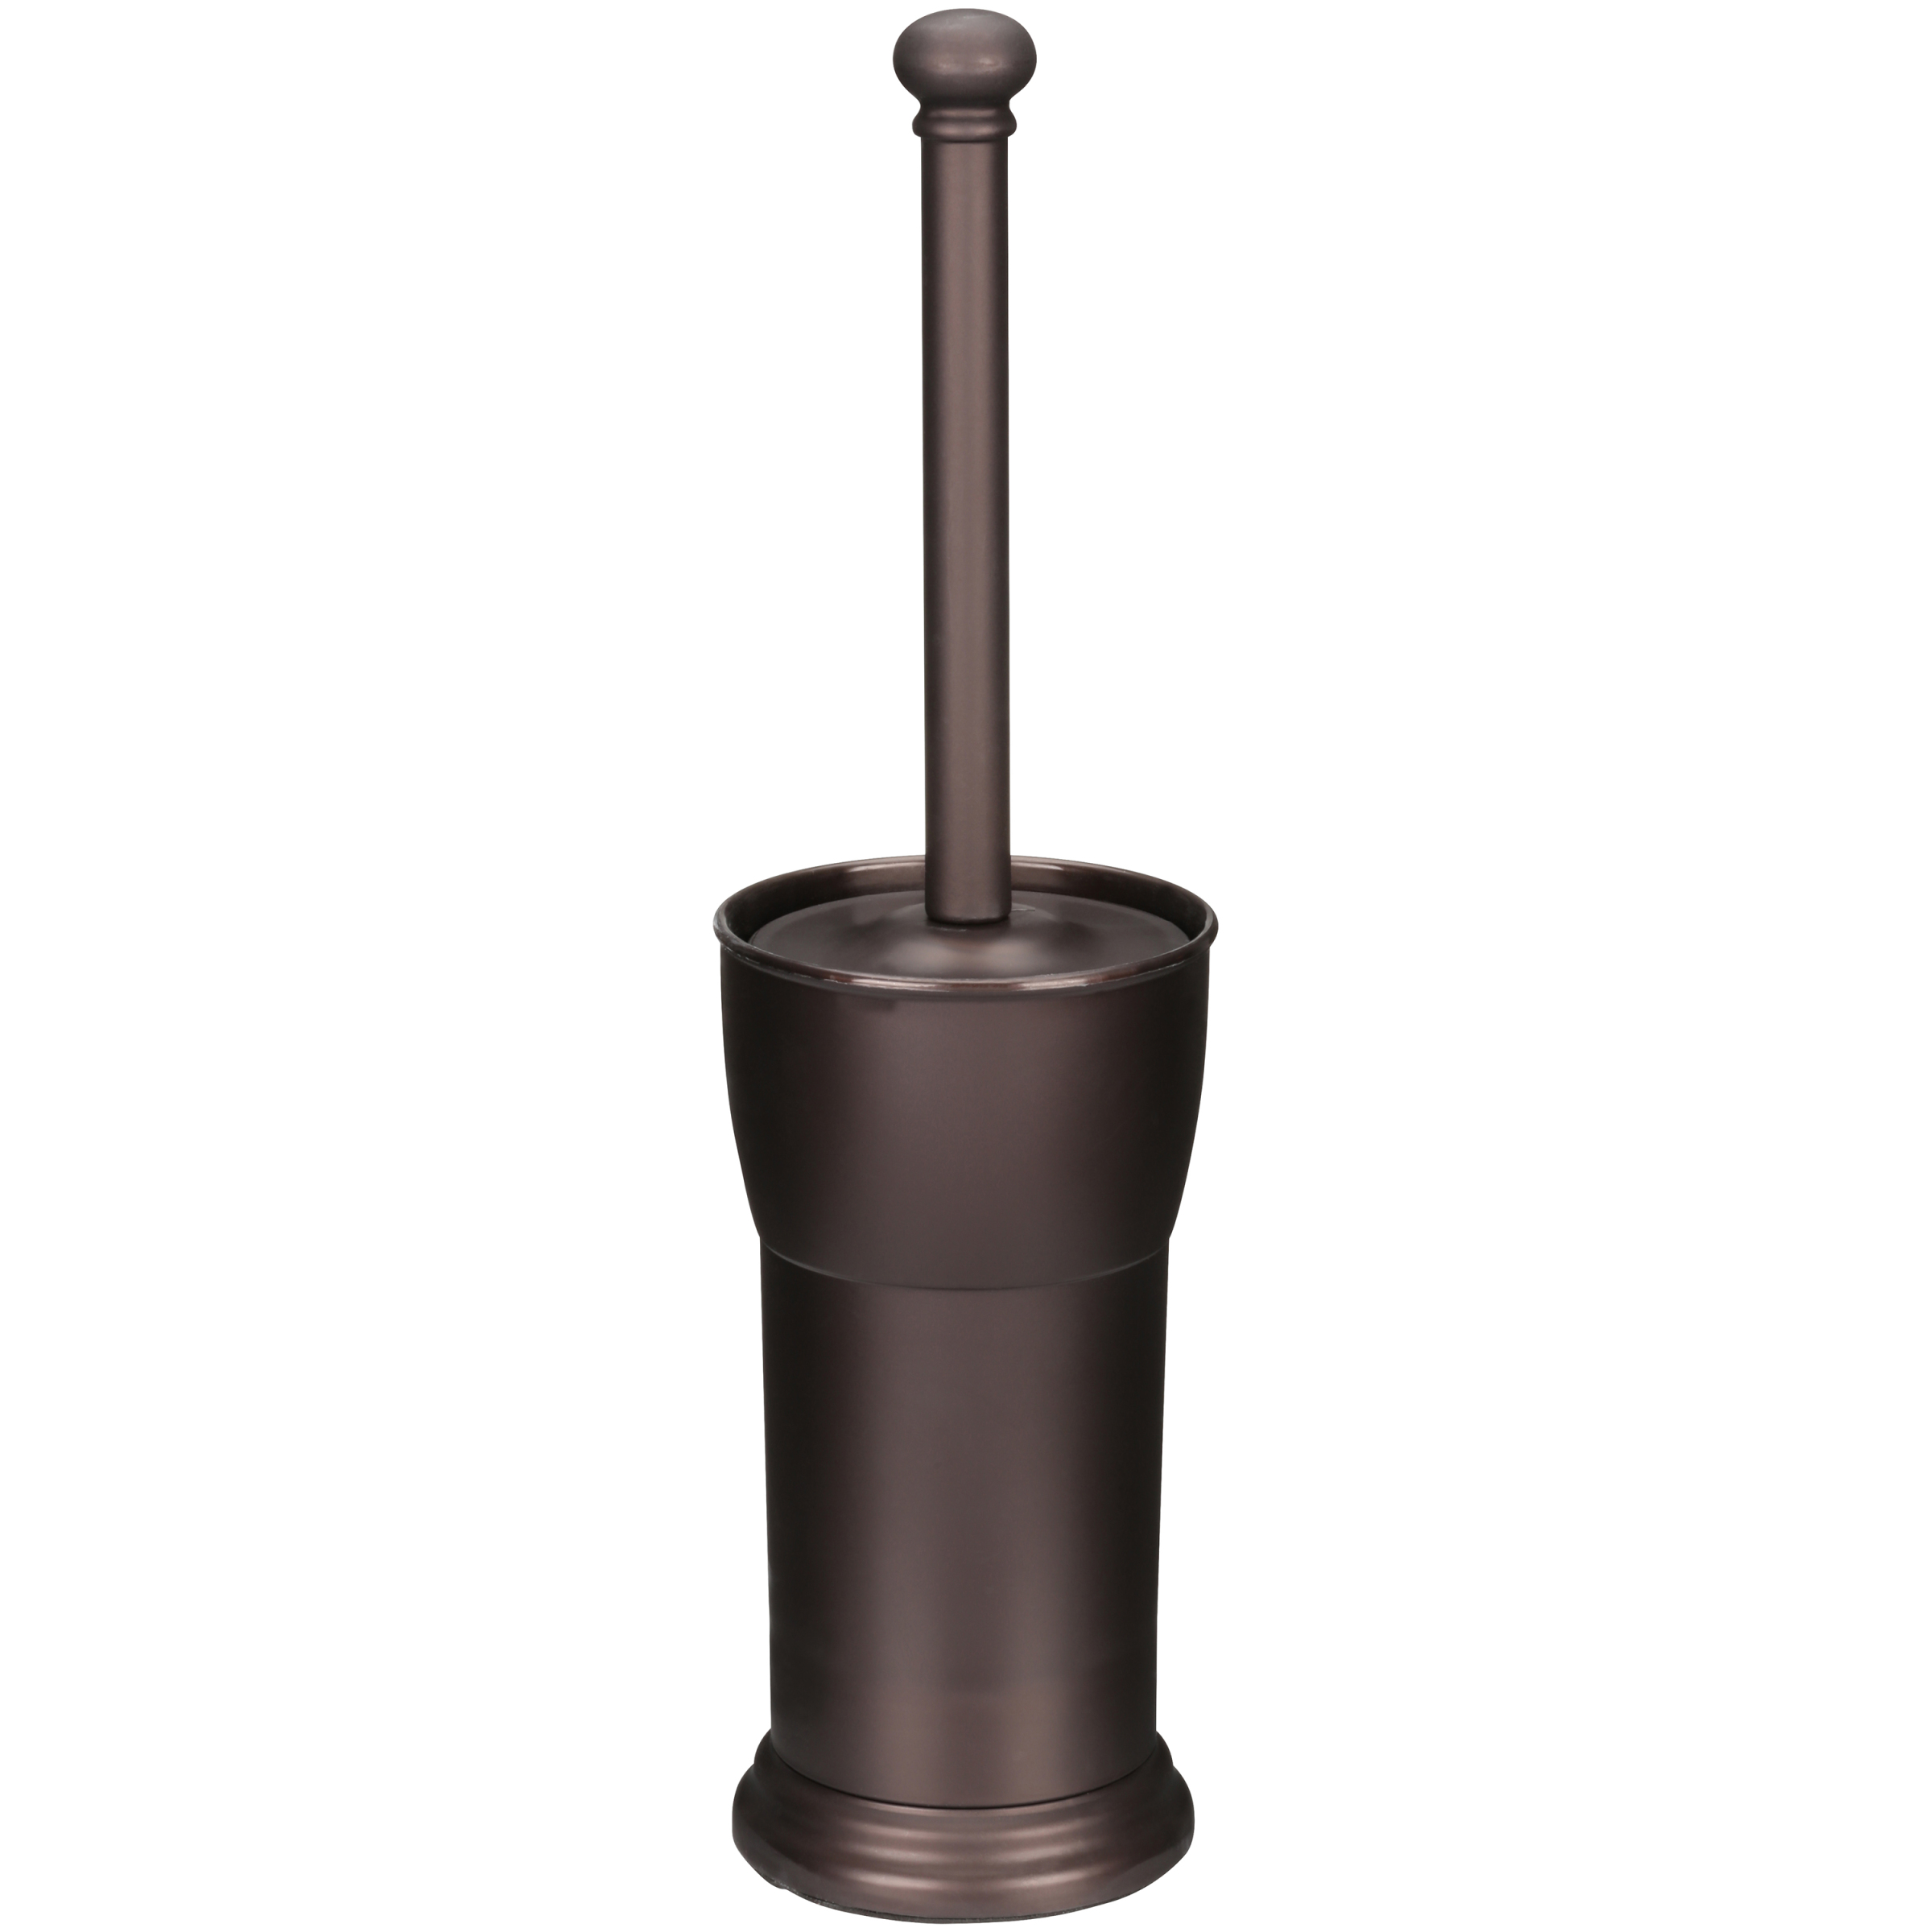 Better Homes & Gardens Plastic Toilet Bowl Brush & Holder, Bronze - image 3 of 4